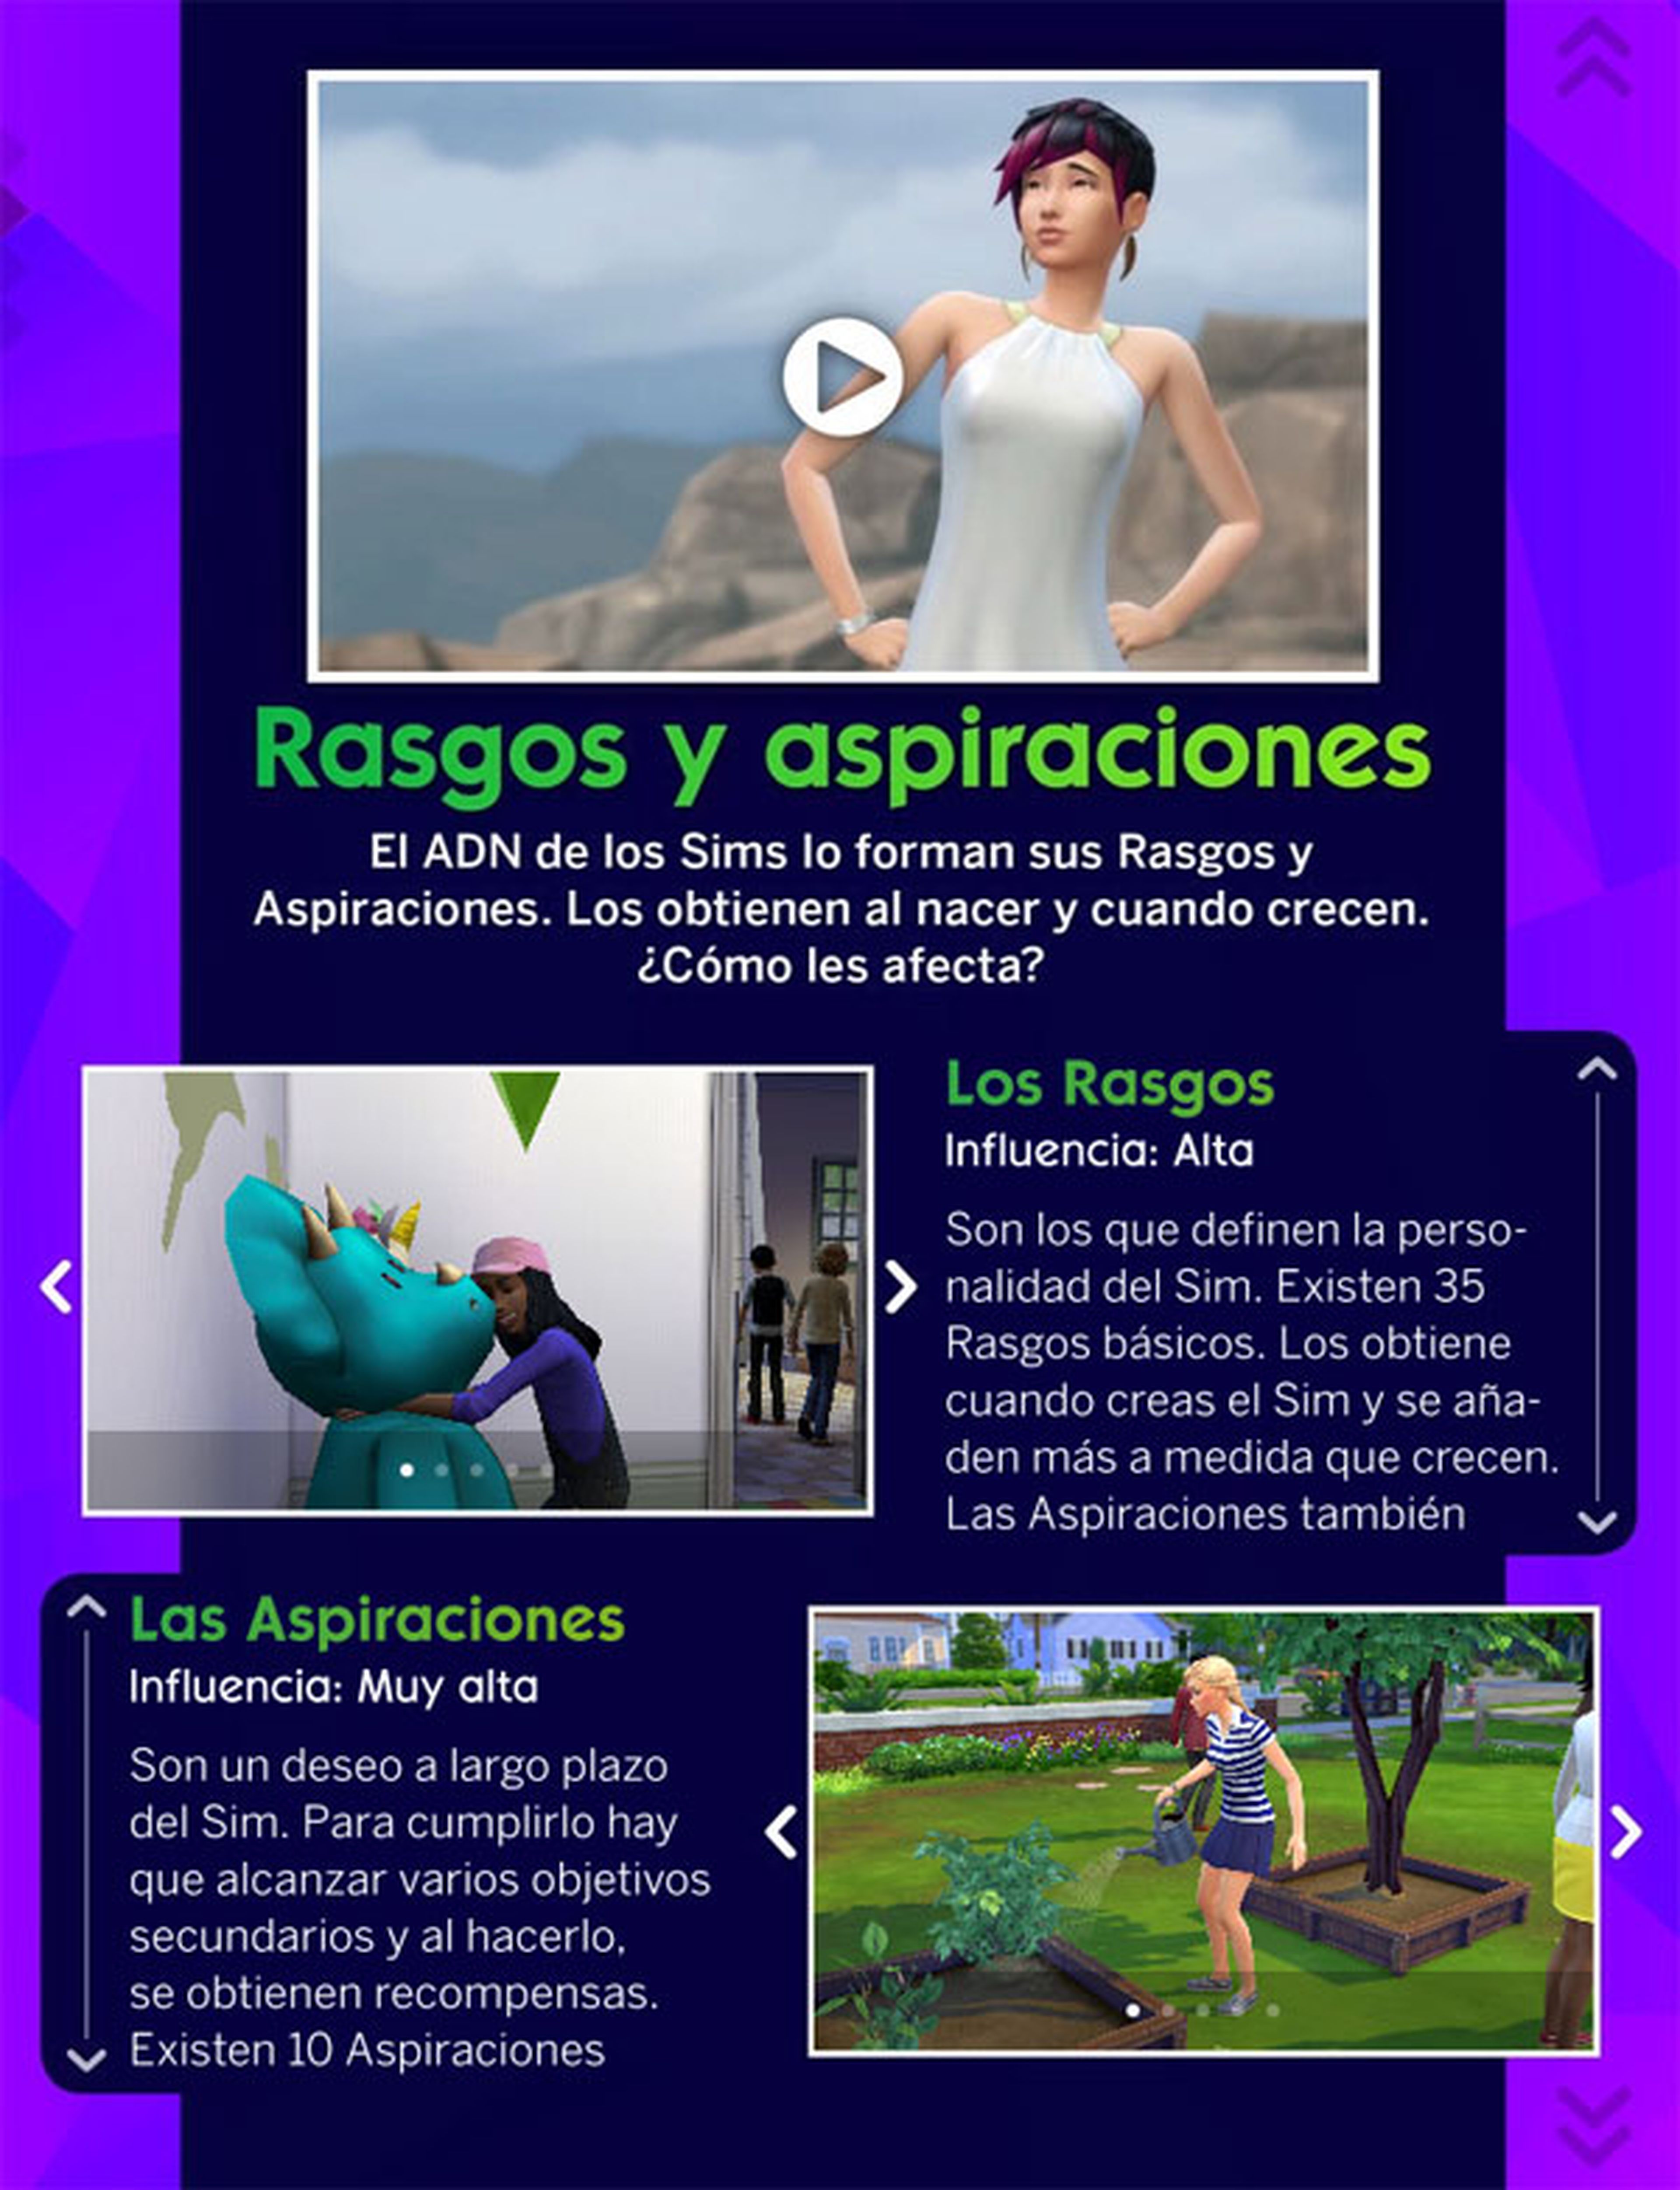 Revista Oficial Los Sims: nuevo número disponible gratis